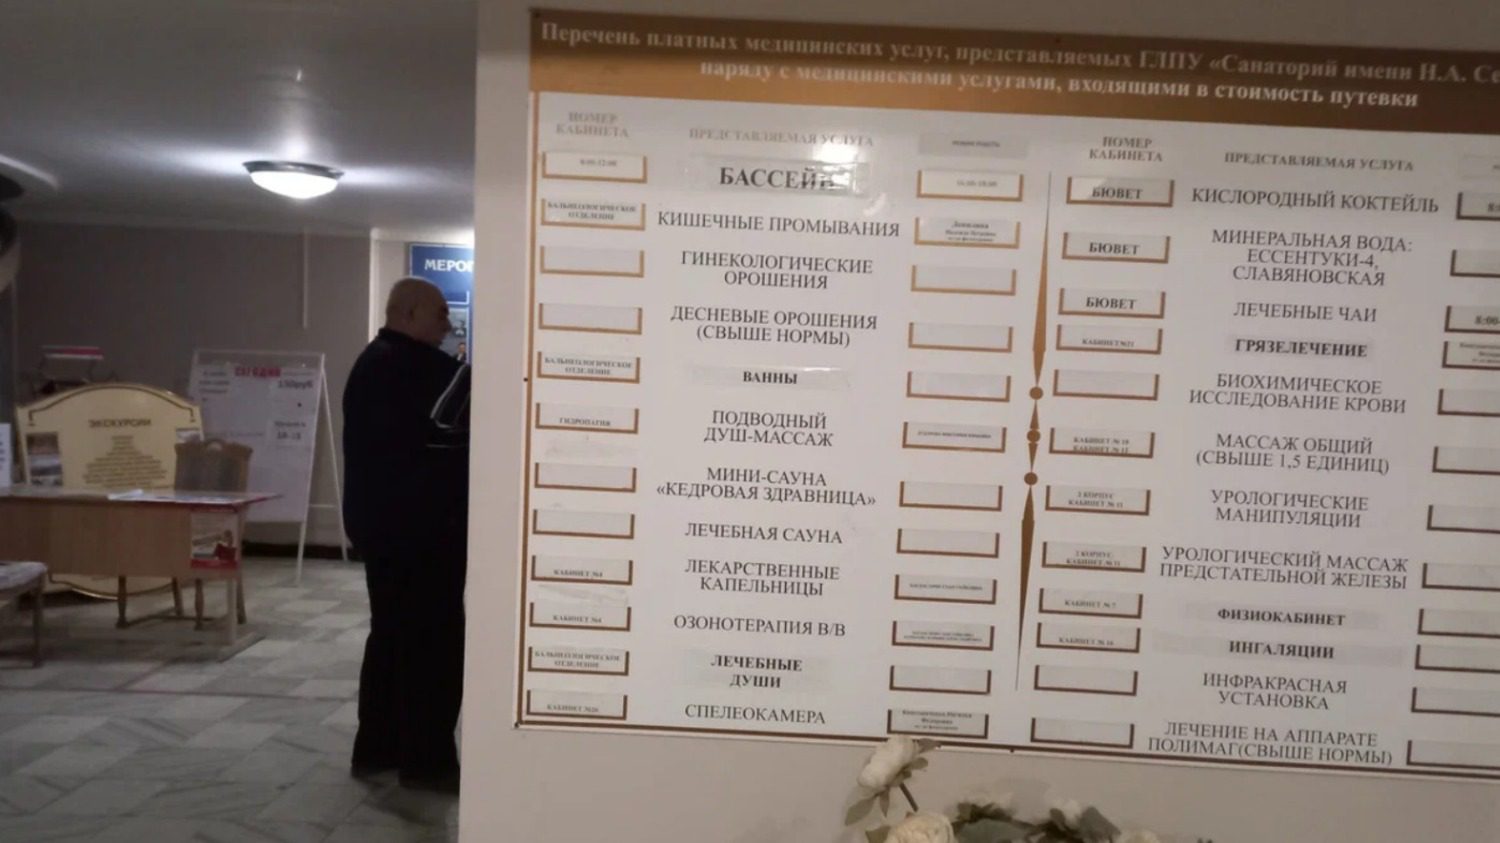 Управление делами президента Украины осталось без санатория на Ставрополье0